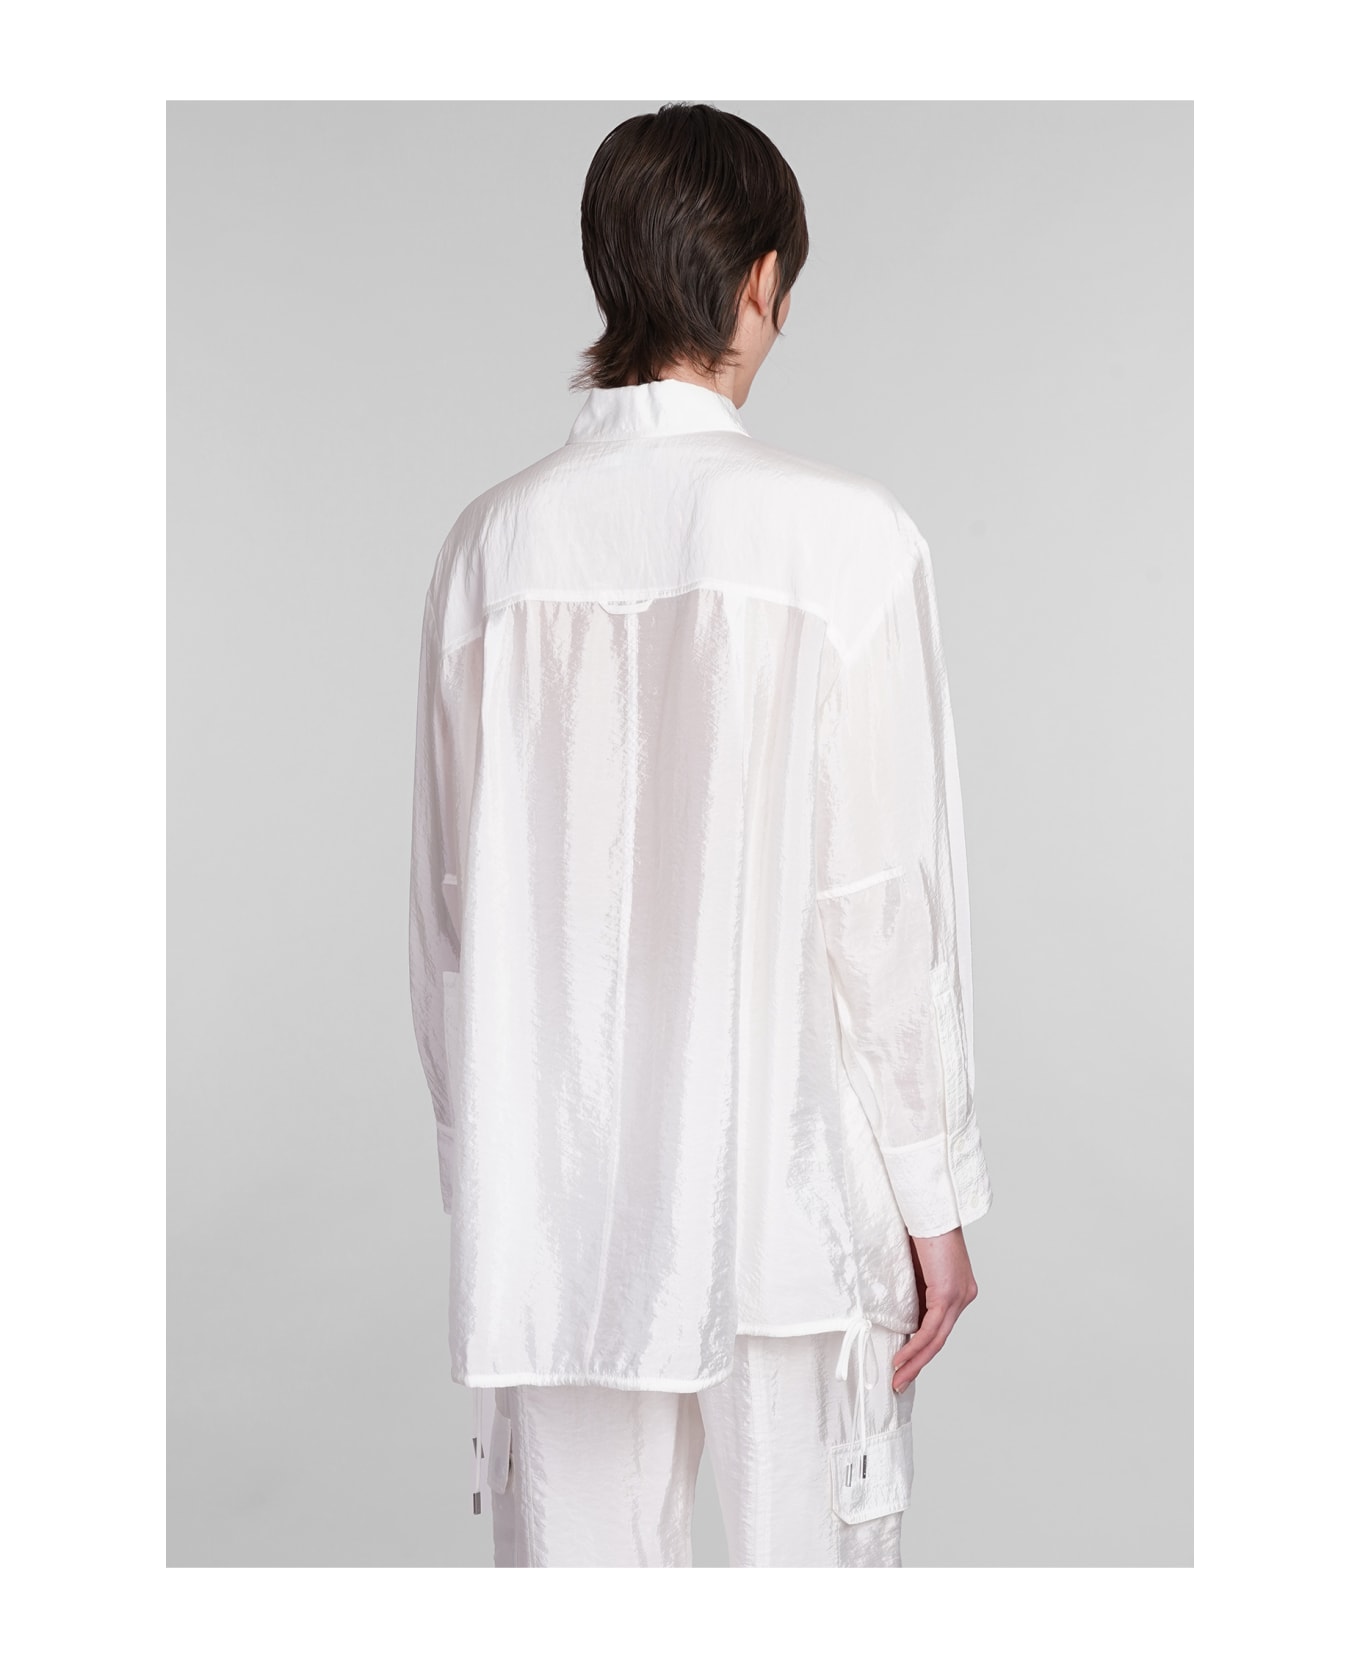 Simkhai Laylah Shirt In White Rayon - white ブラウス